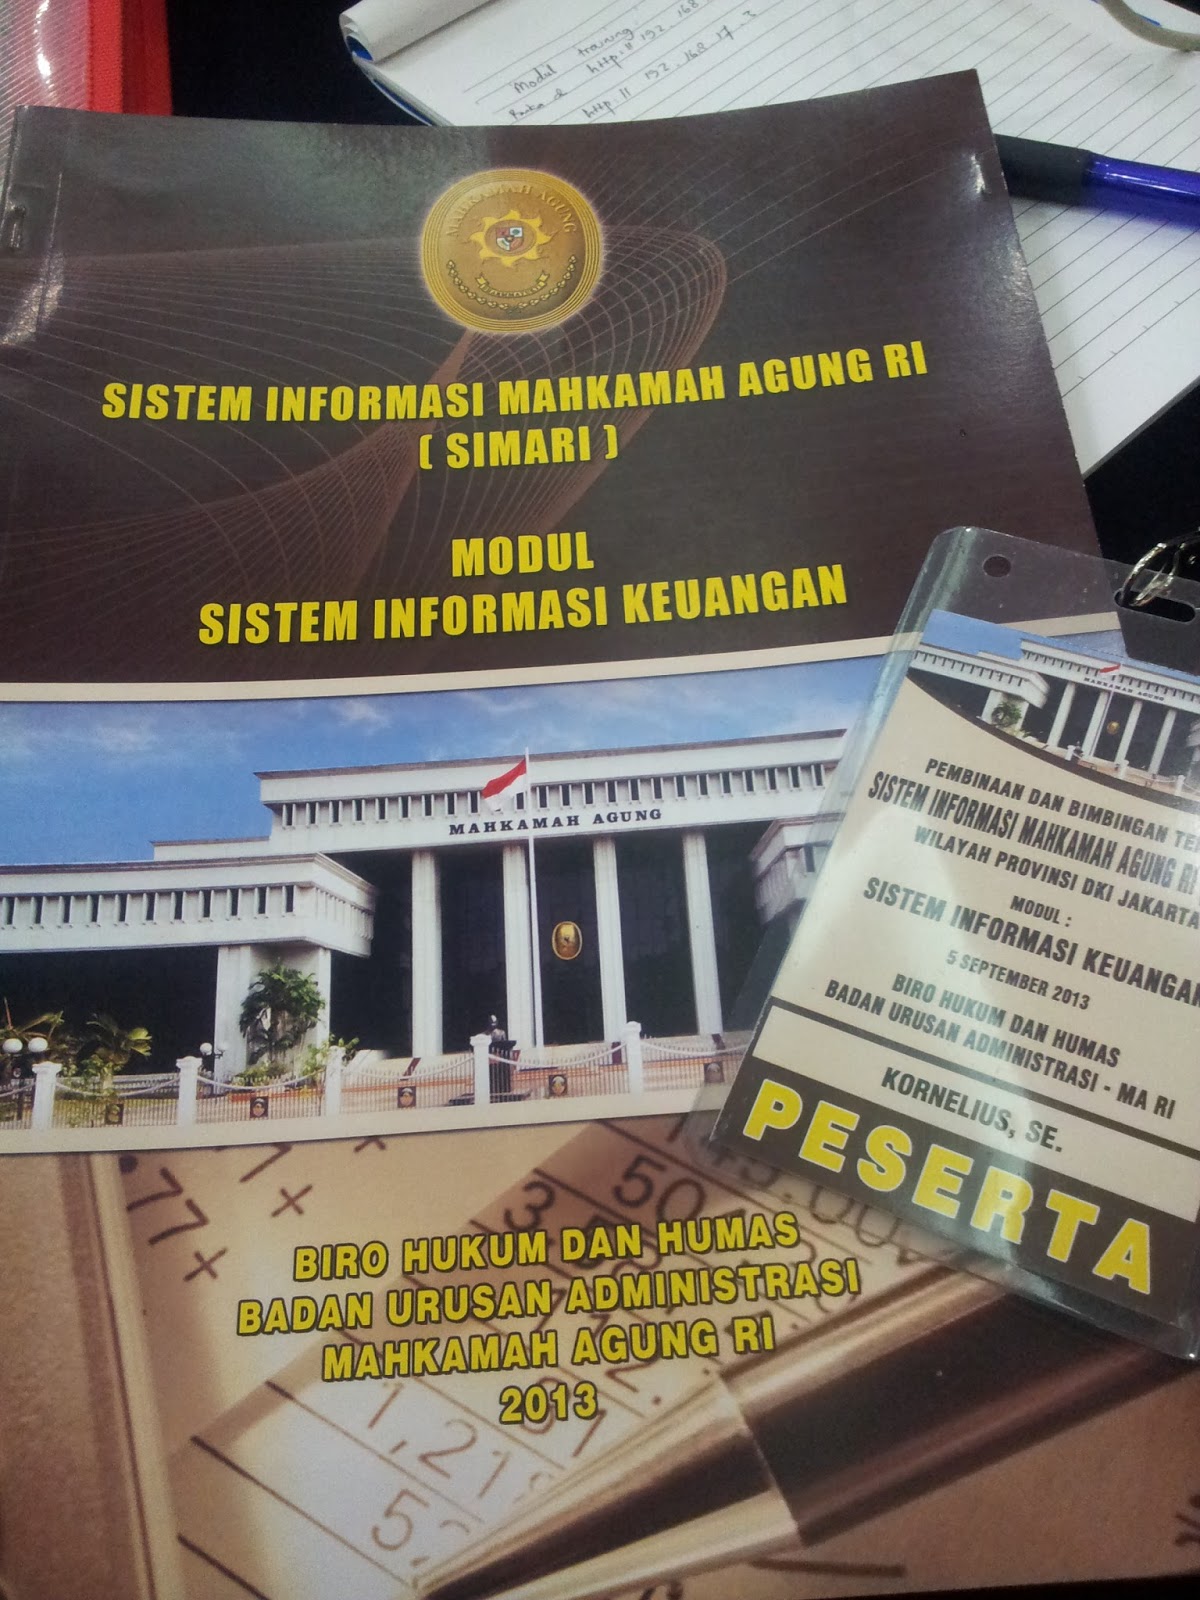 Sistem Infomasi Keuangan Mahkamah Agung Bintek SIMARI